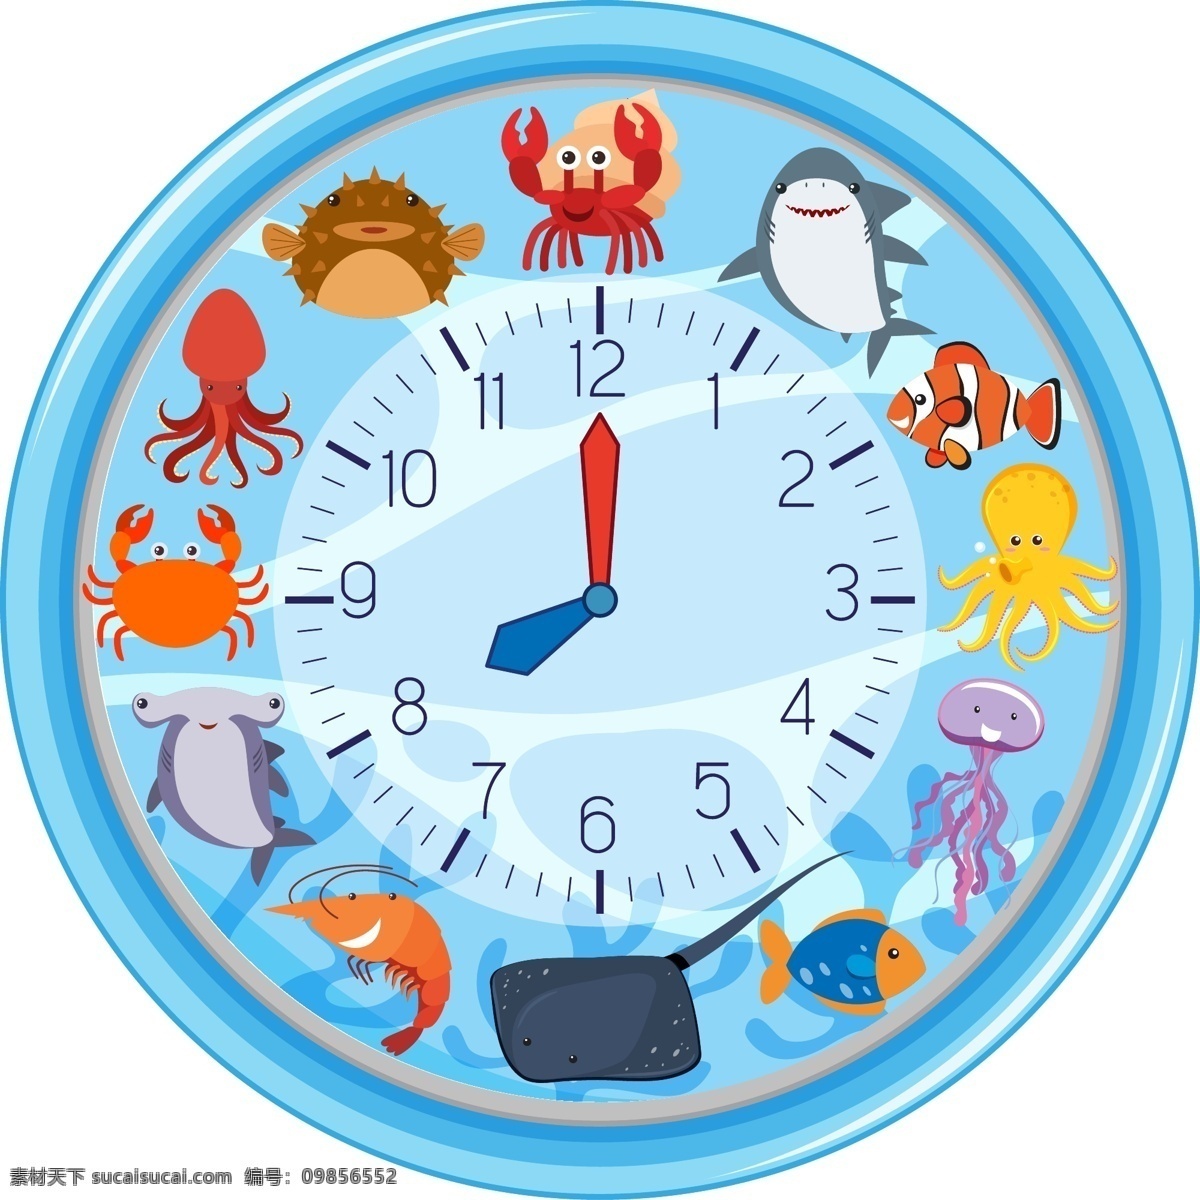 钟表图片 手表 钟表 时间 效率 插图 手绘 插画 ai矢量